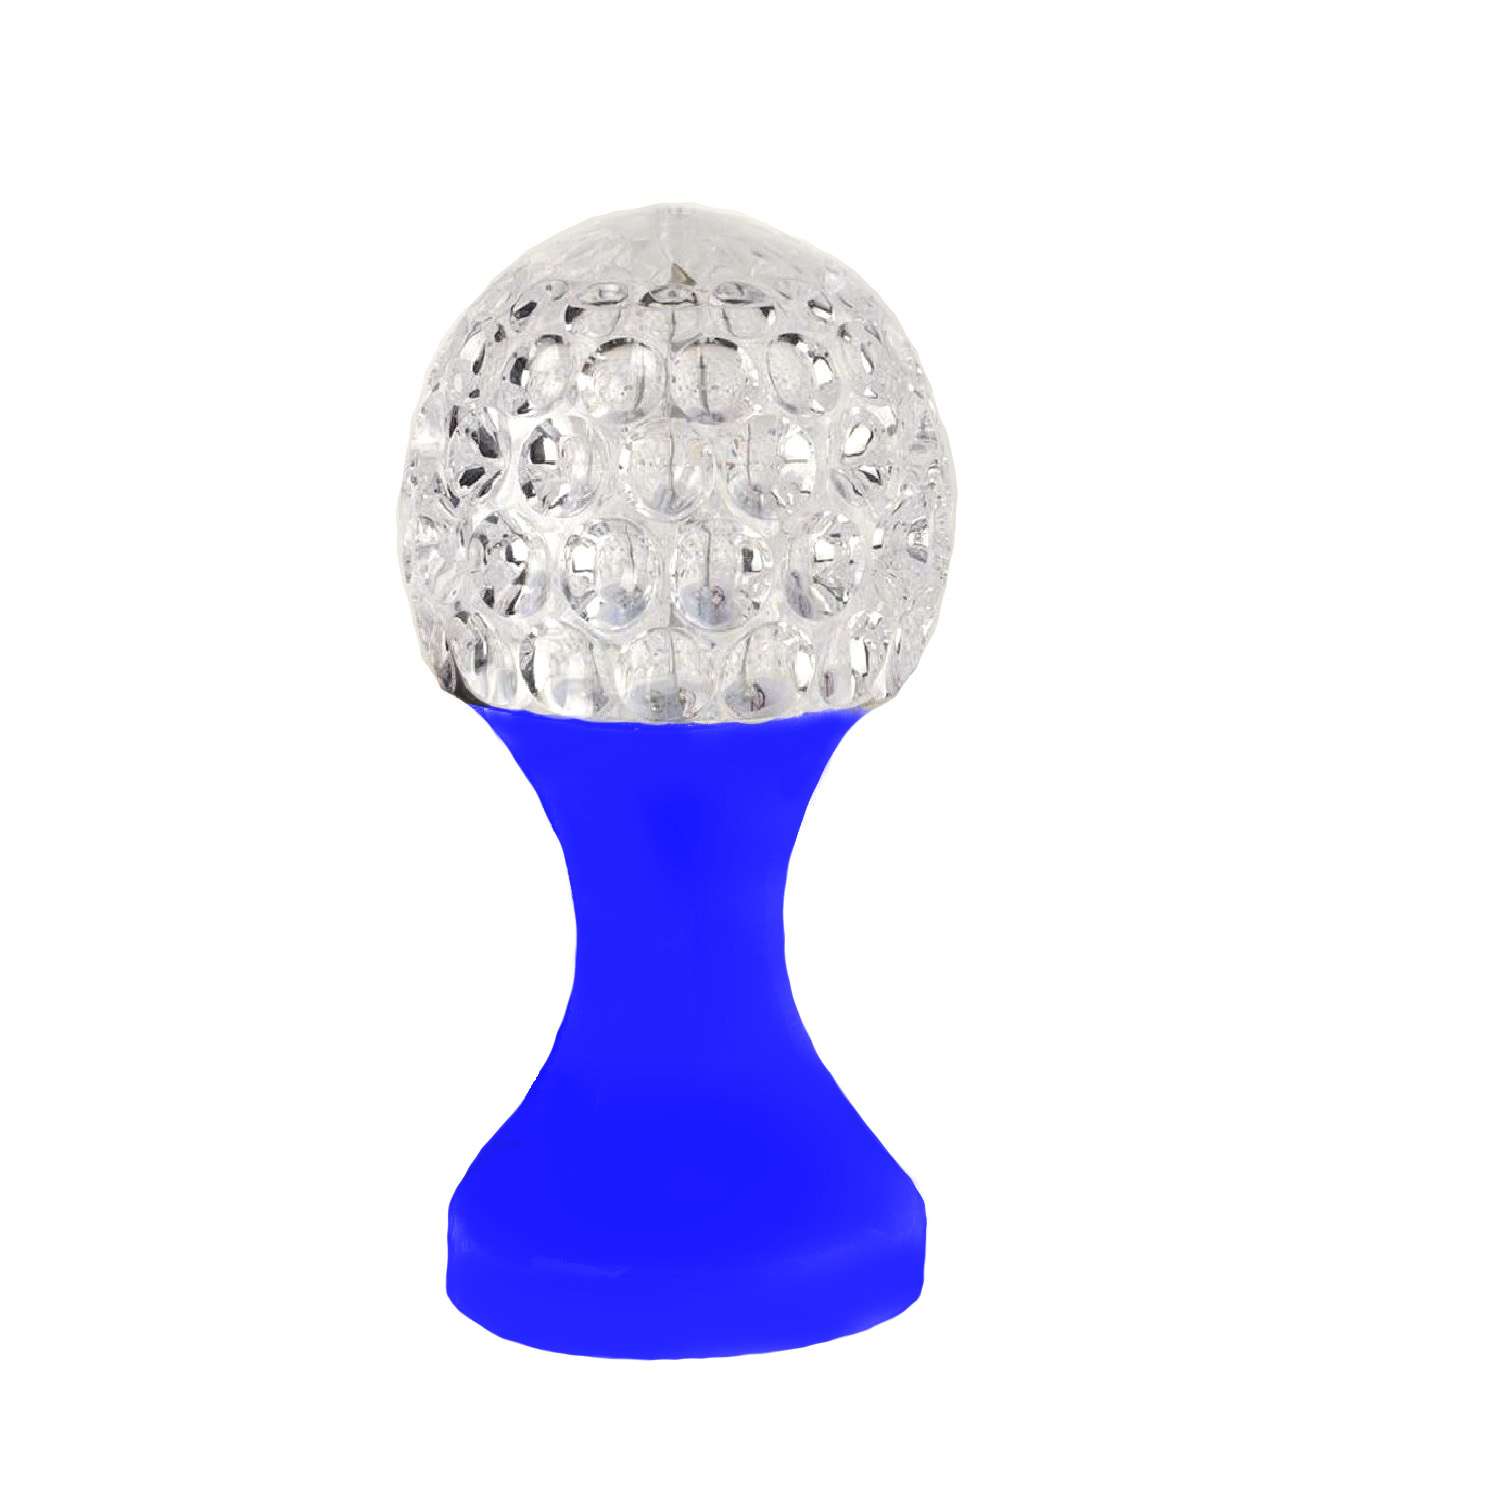 Ночник Uniglodis Кубок хрустальный шар синяя подставка - фото 2